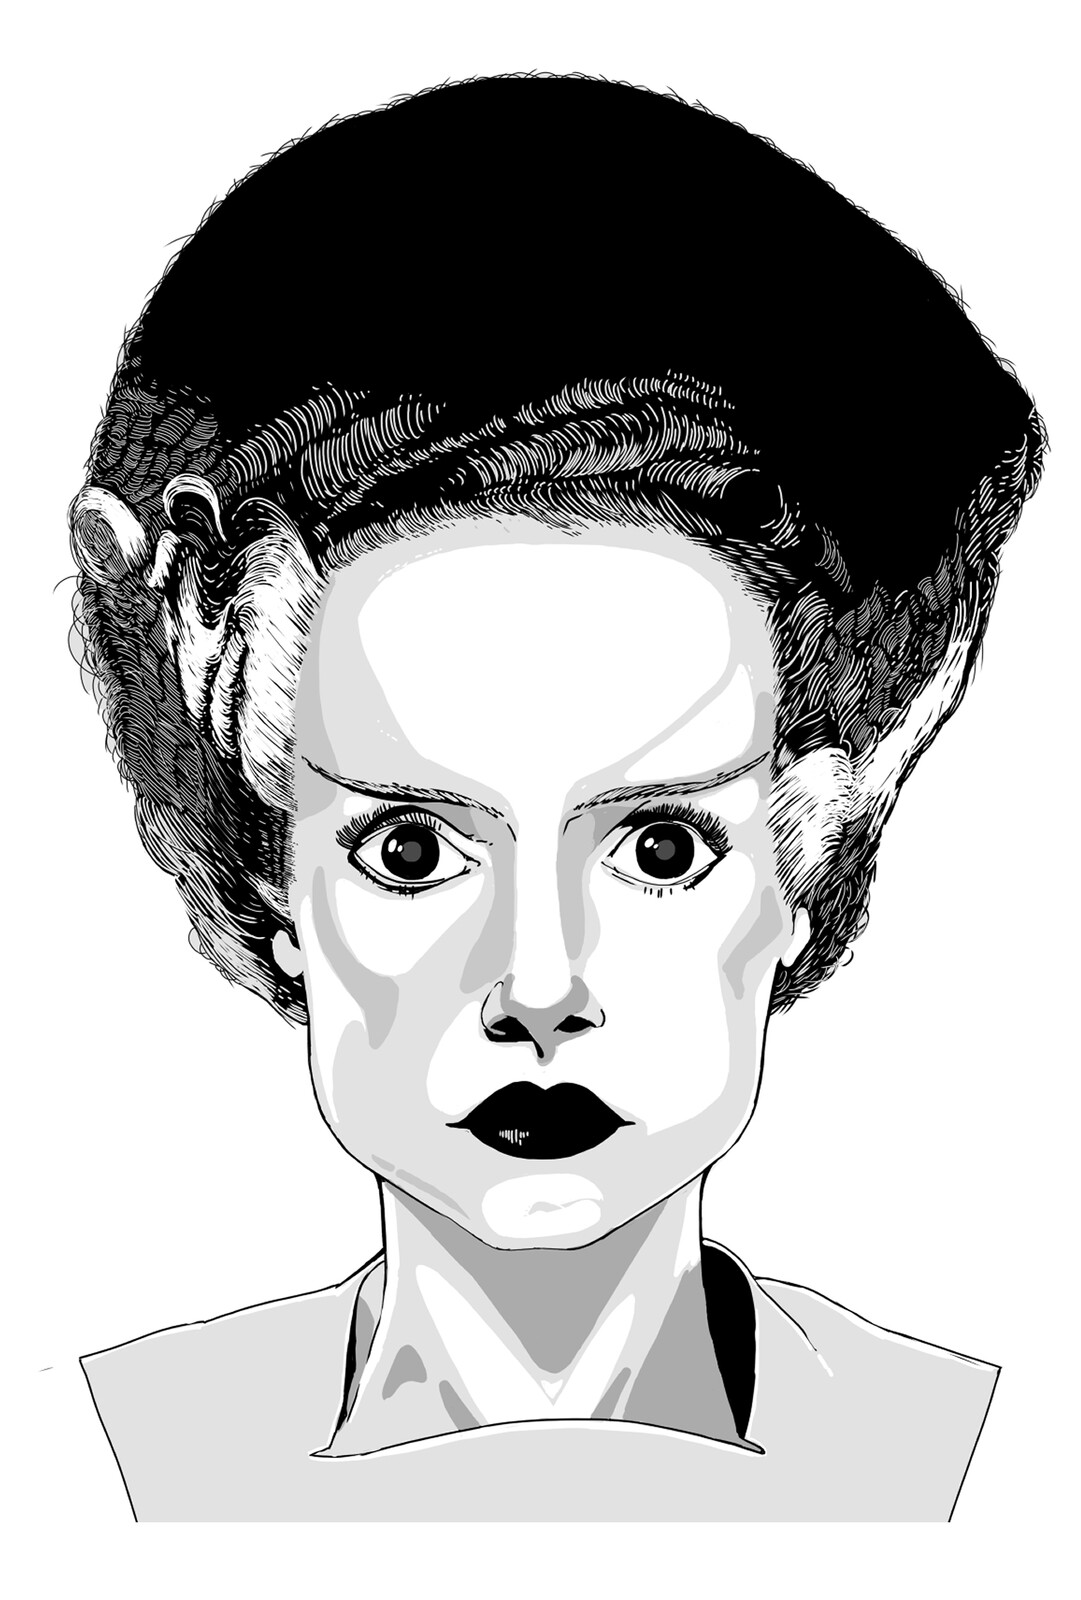 Illustration of the bride of Frankenstein